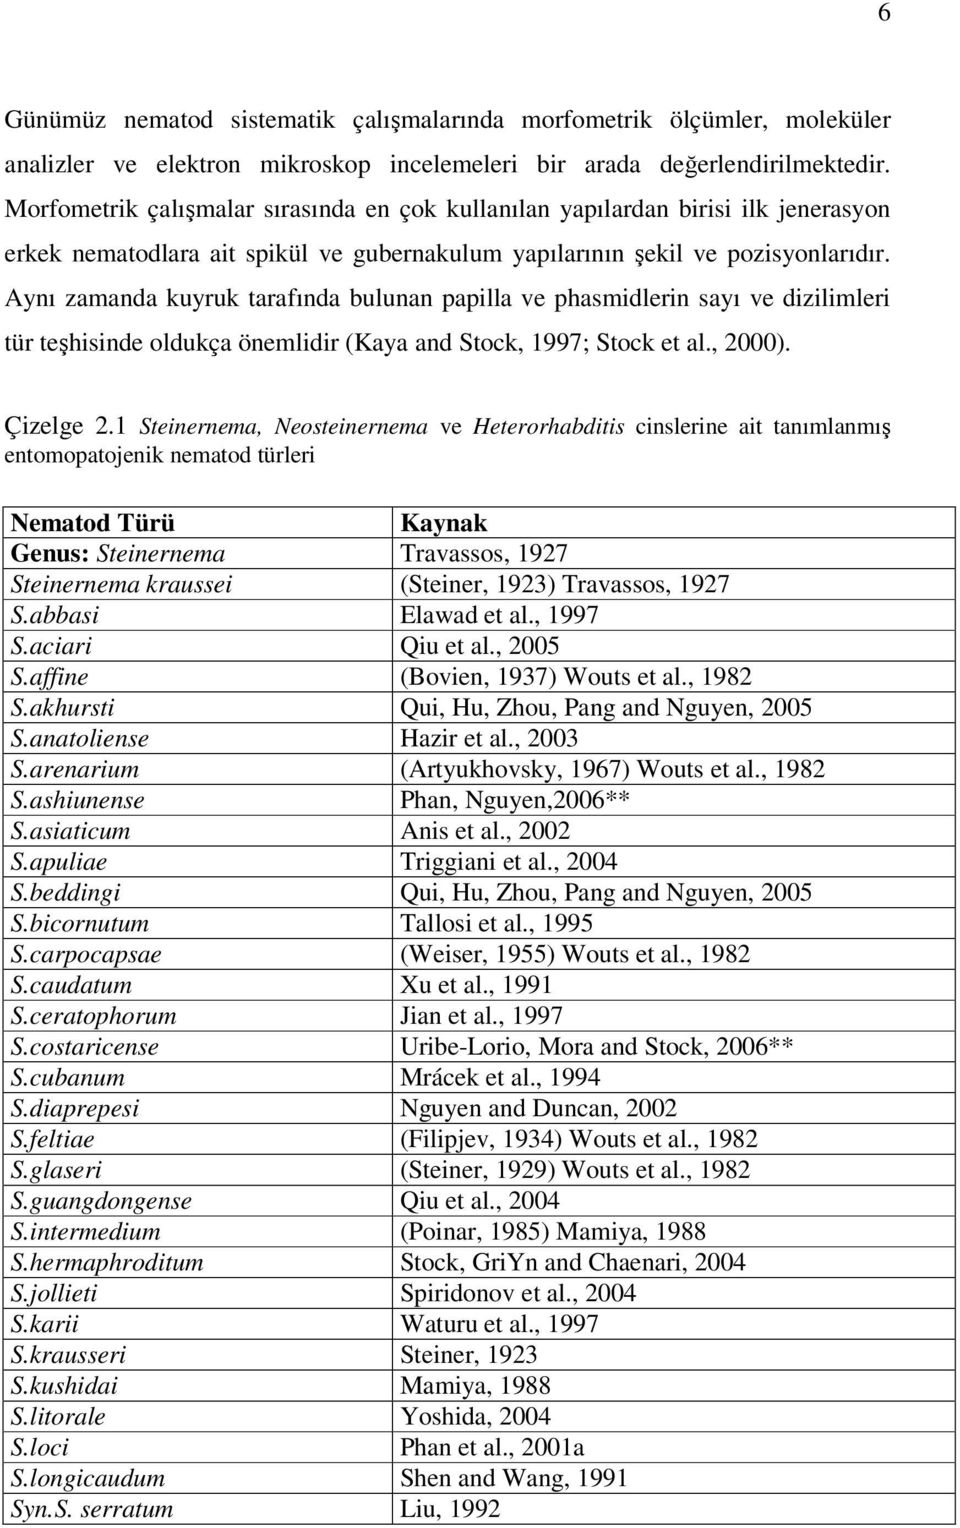 Aynı zamanda kuyruk tarafında bulunan papilla ve phasmidlerin sayı ve dizilimleri tür teşhisinde oldukça önemlidir (Kaya and Stock, 1997; Stock et al., 2000). Çizelge 2.